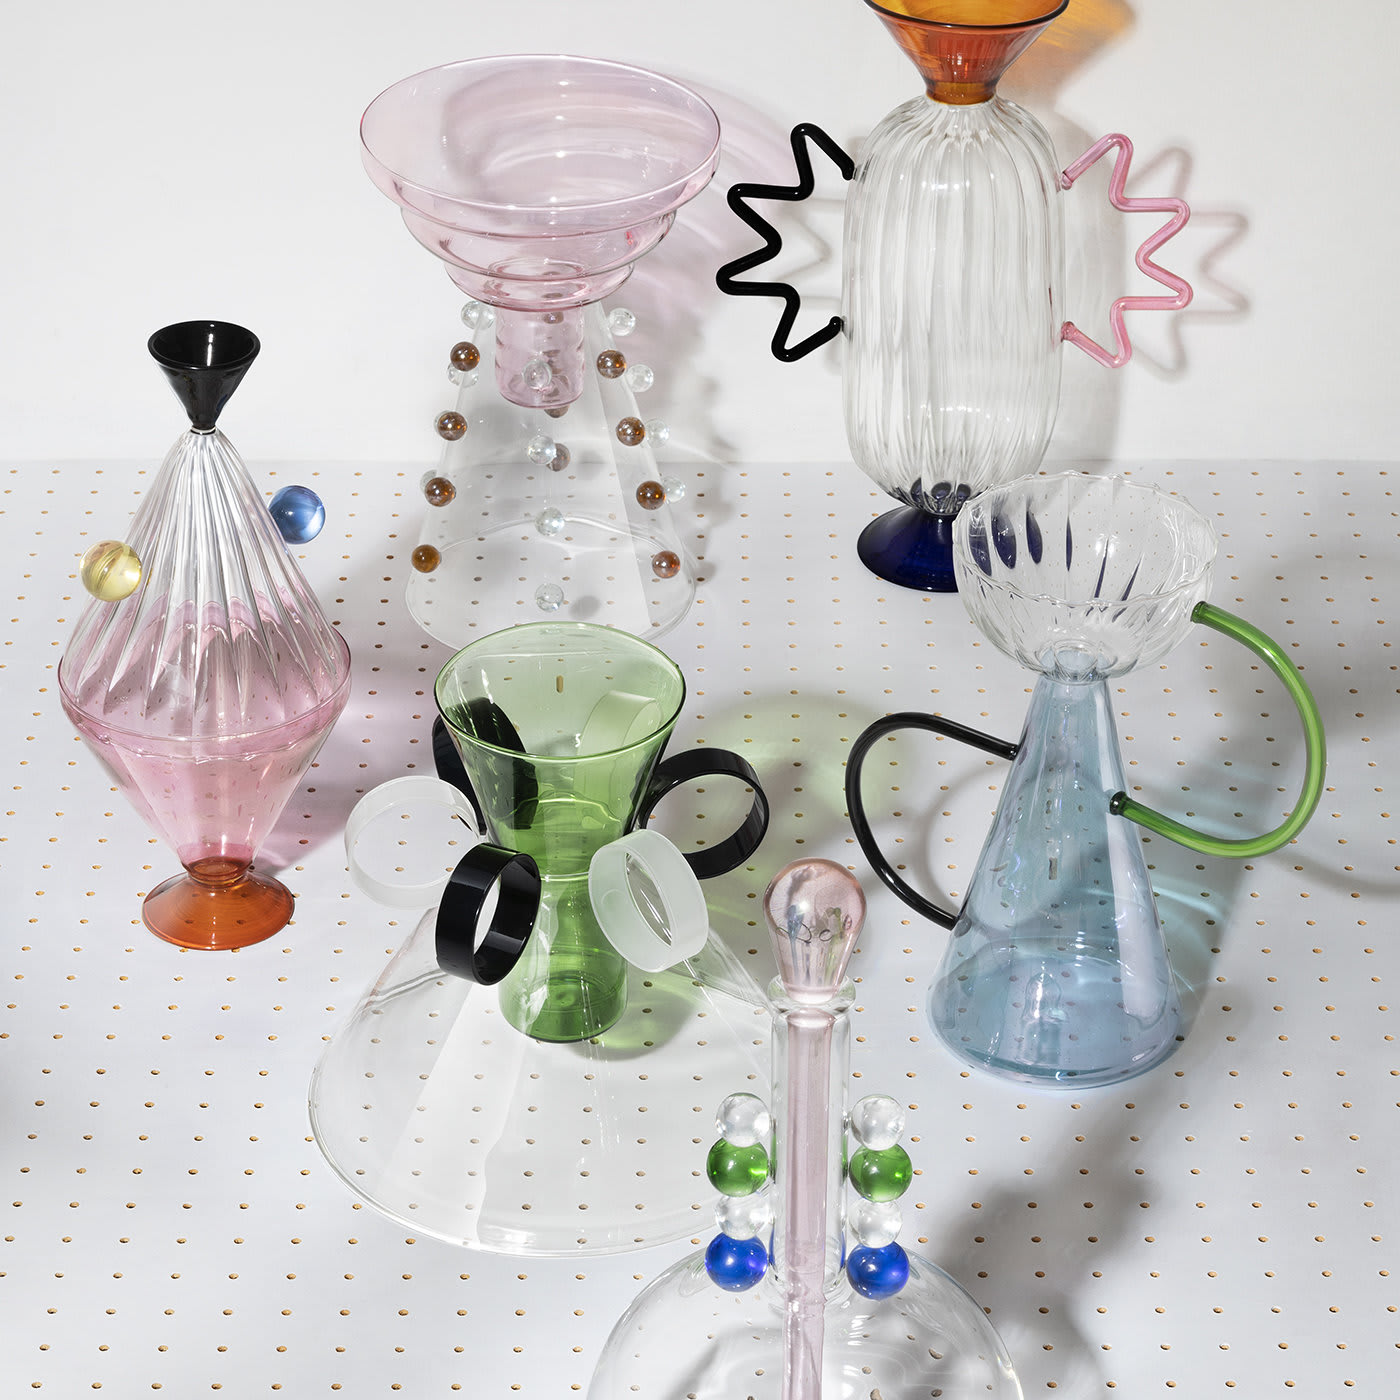 Arabesque 04 Hand-Blown Glass Vase - Serena Confalonieri